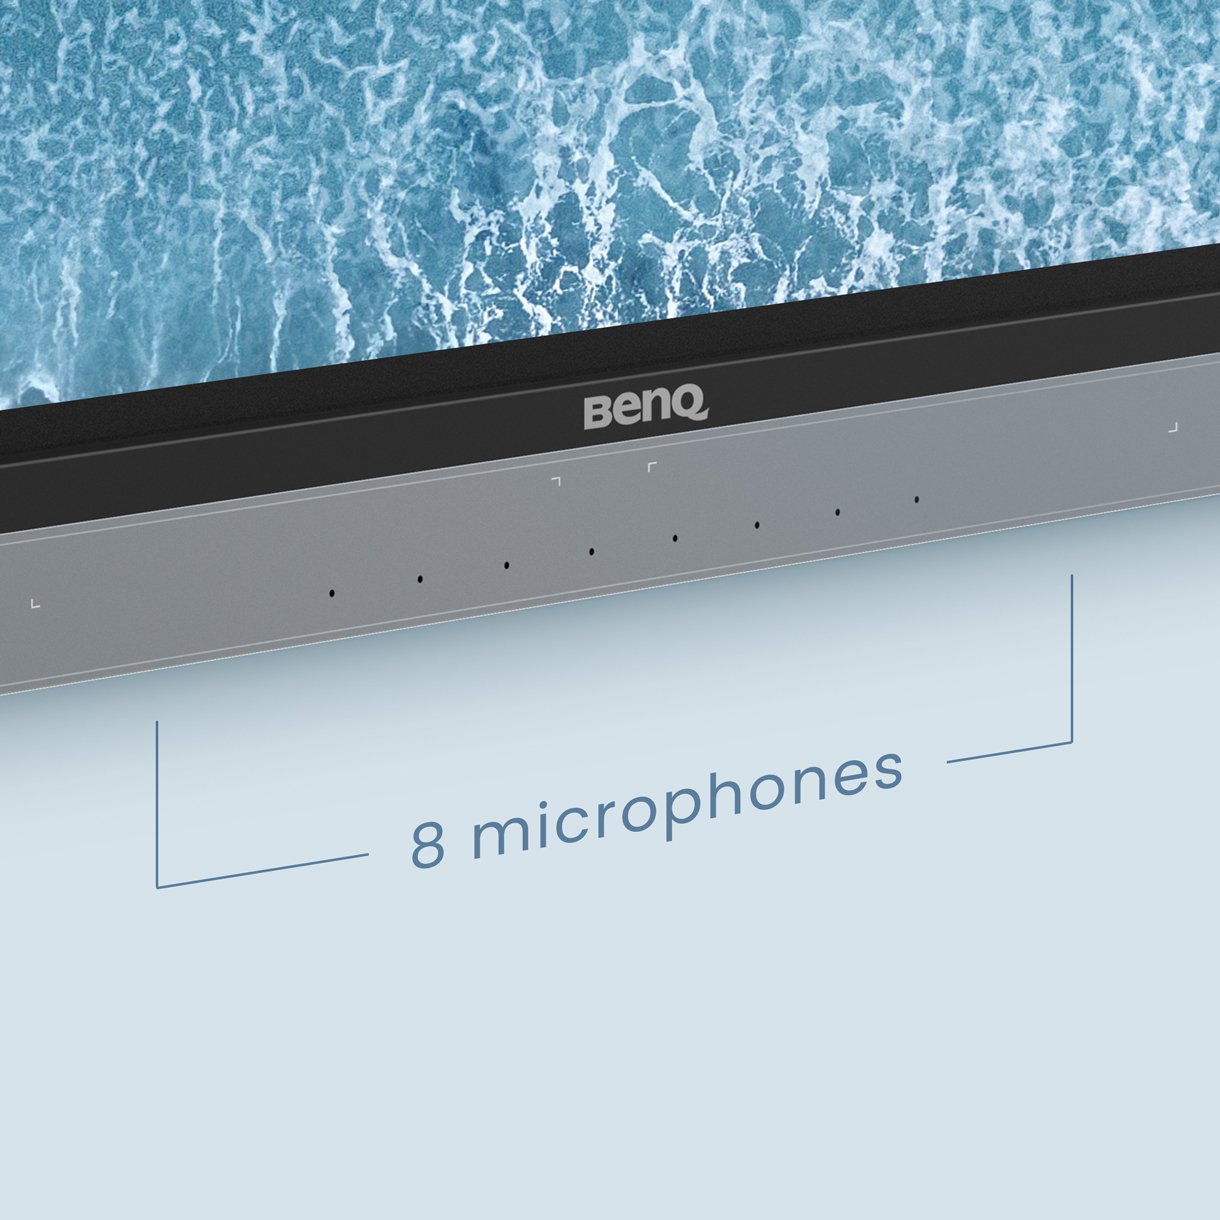 Interaktivní monitor BenQ Board RM04 je navržen pro hybridní pracoviště a je vybaven dvěma robustními 20wattovými předními reproduktory a soustavou 8 mikrofonů s pokročilým potlačením ozvěny a redukcí šumu.